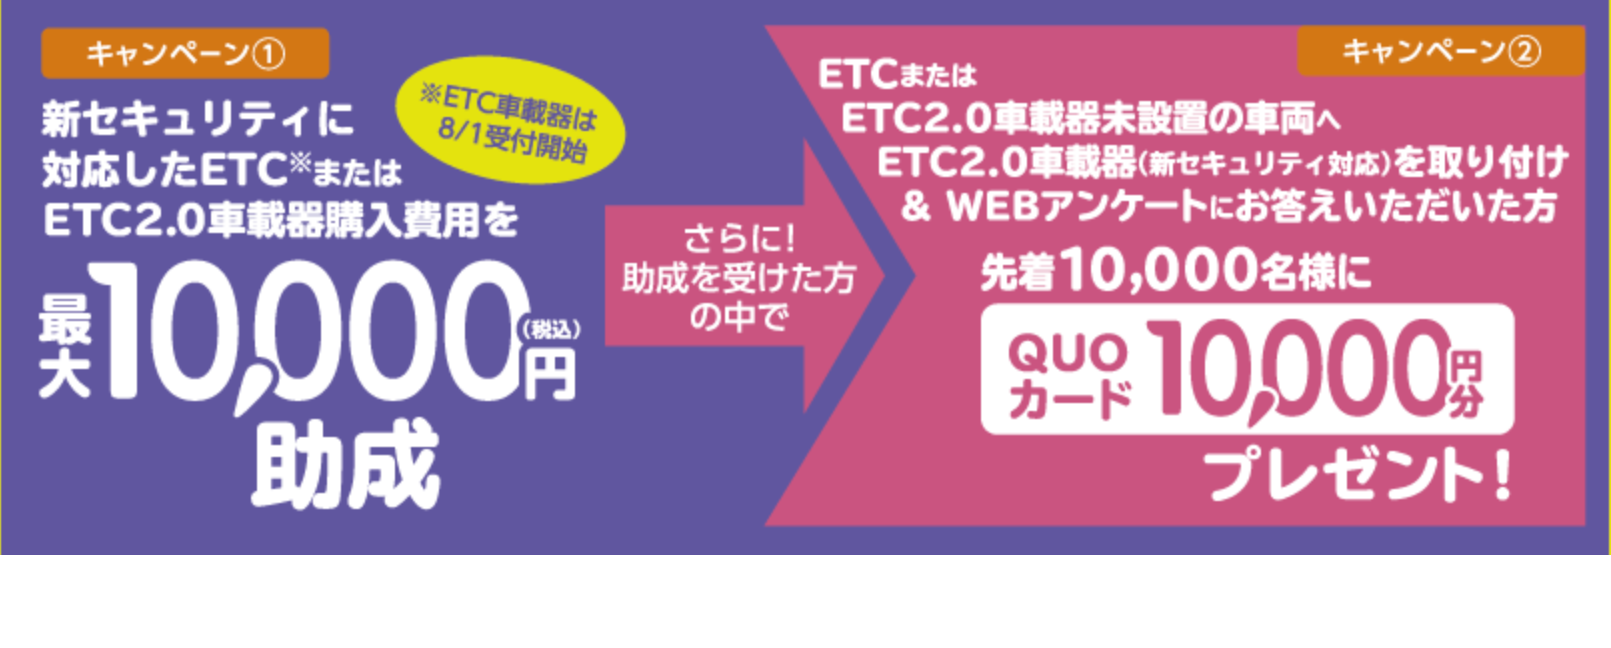 中京圏ETC/ETC2.0車載器購入助成キャンペーン